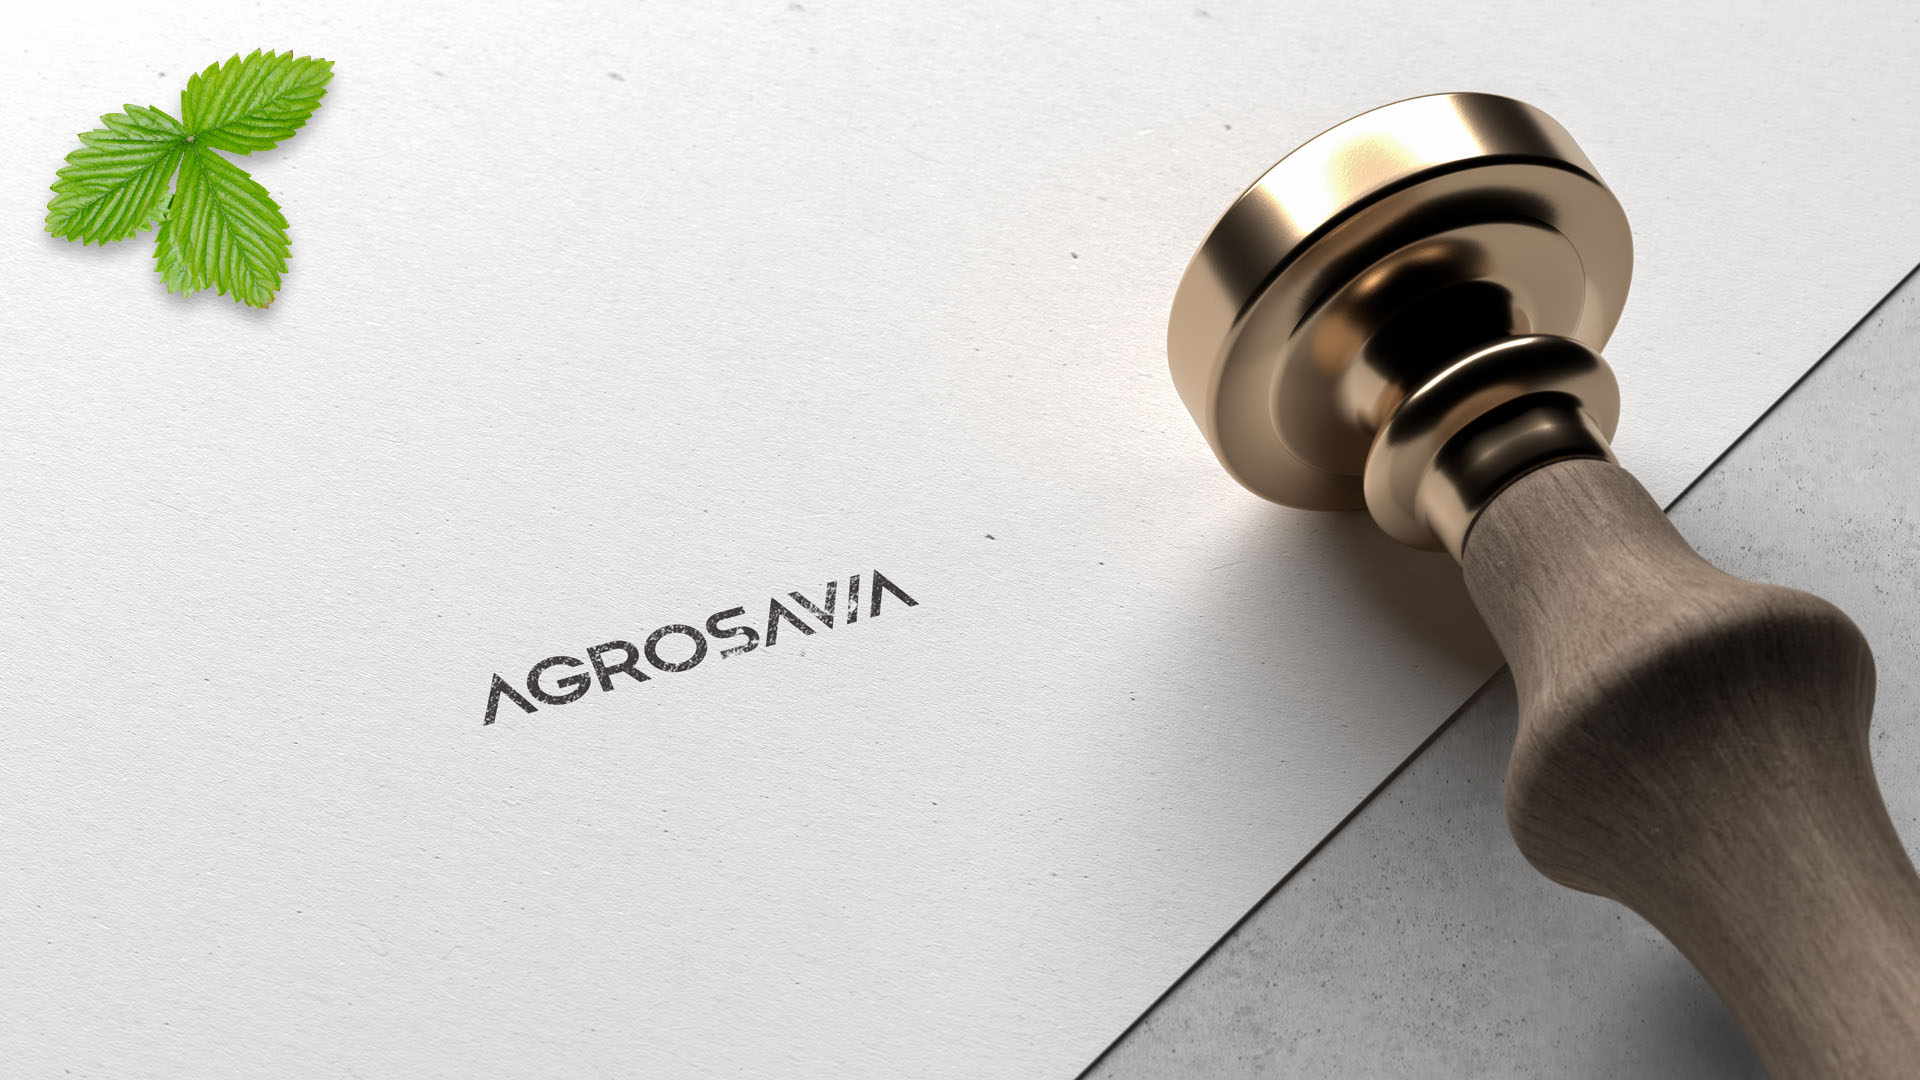 Diseño de Imagen corporativa. Identidad visual para la marca Agrosavia